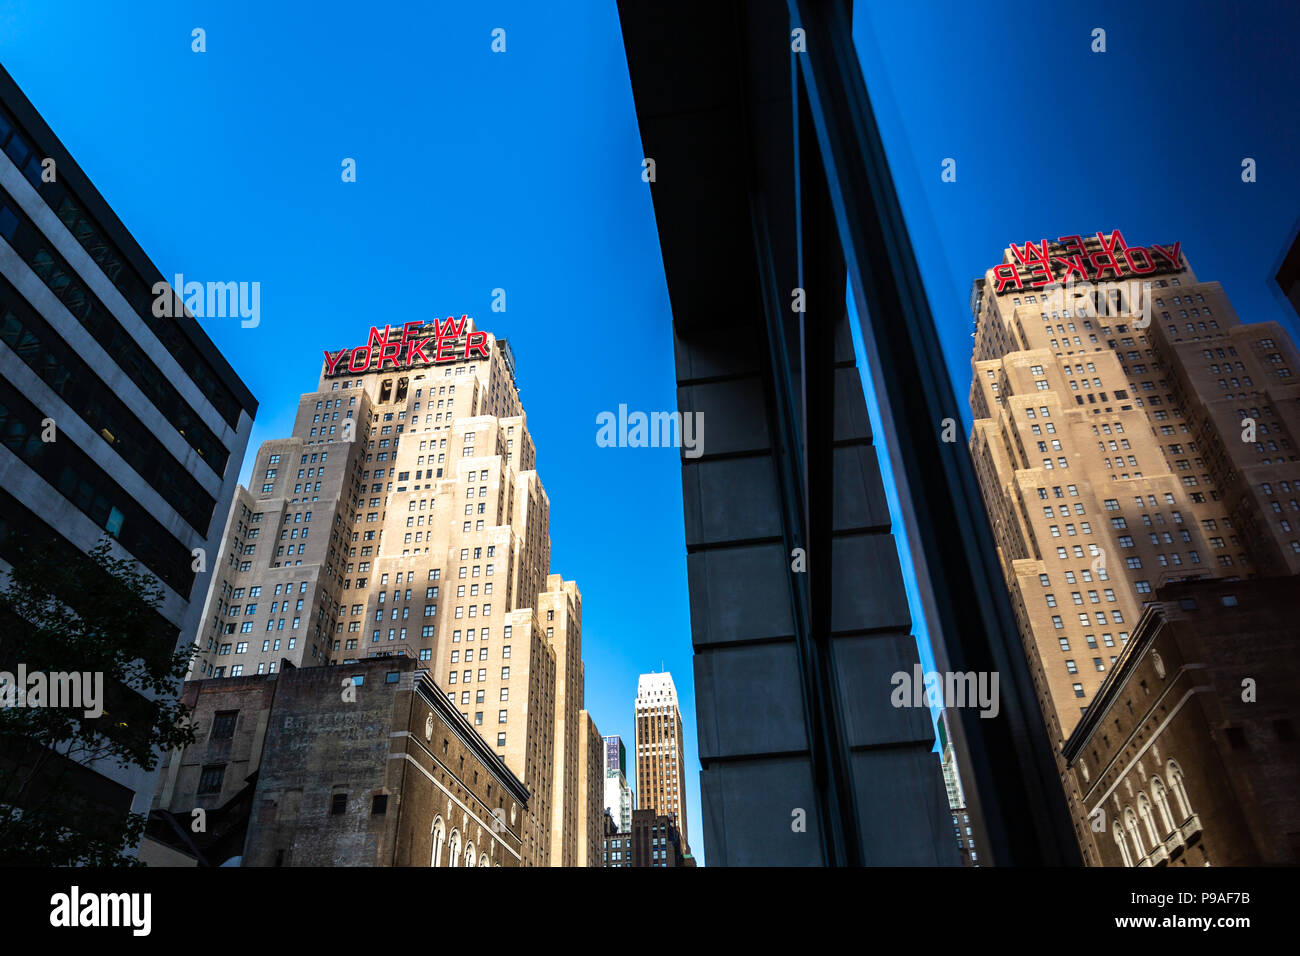 New York / USA - 13 juil 2018 : New Yorker signe de bâtiment de l'hôtel Wyndham à midtown Manhattan Banque D'Images